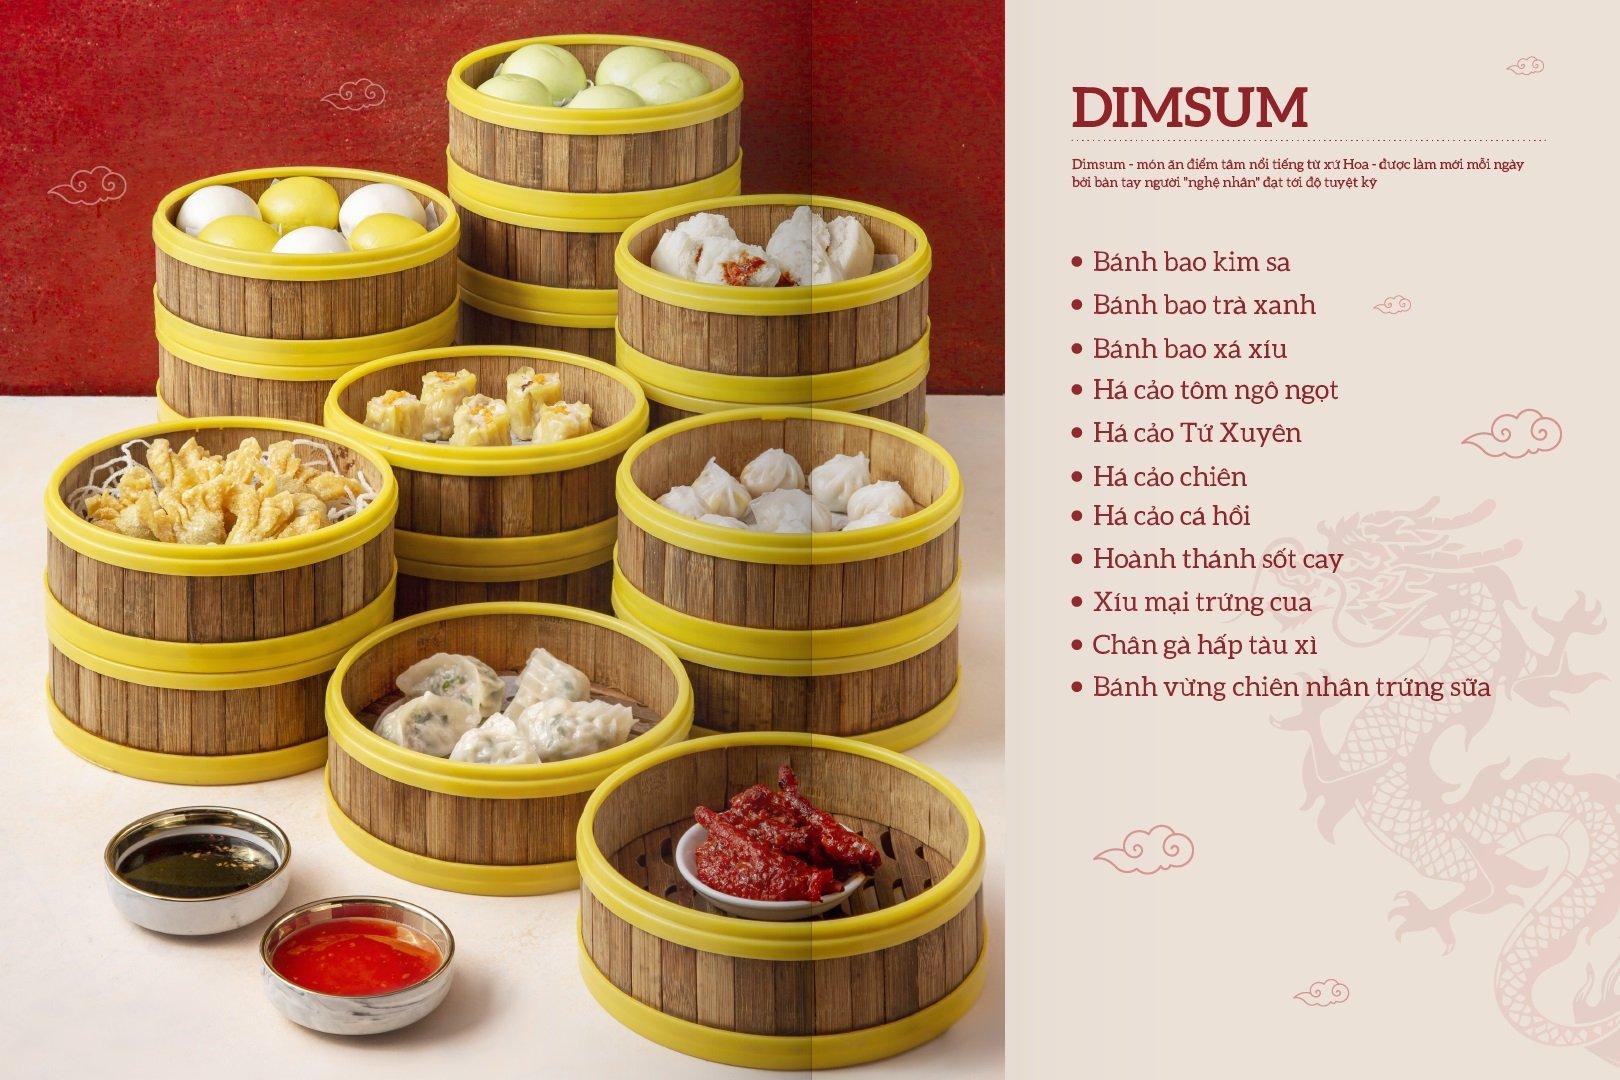 Menu Dimsum cực kì hấp dẫn tại nhà hàng Cửu Vân Long (ảnh: Internet)